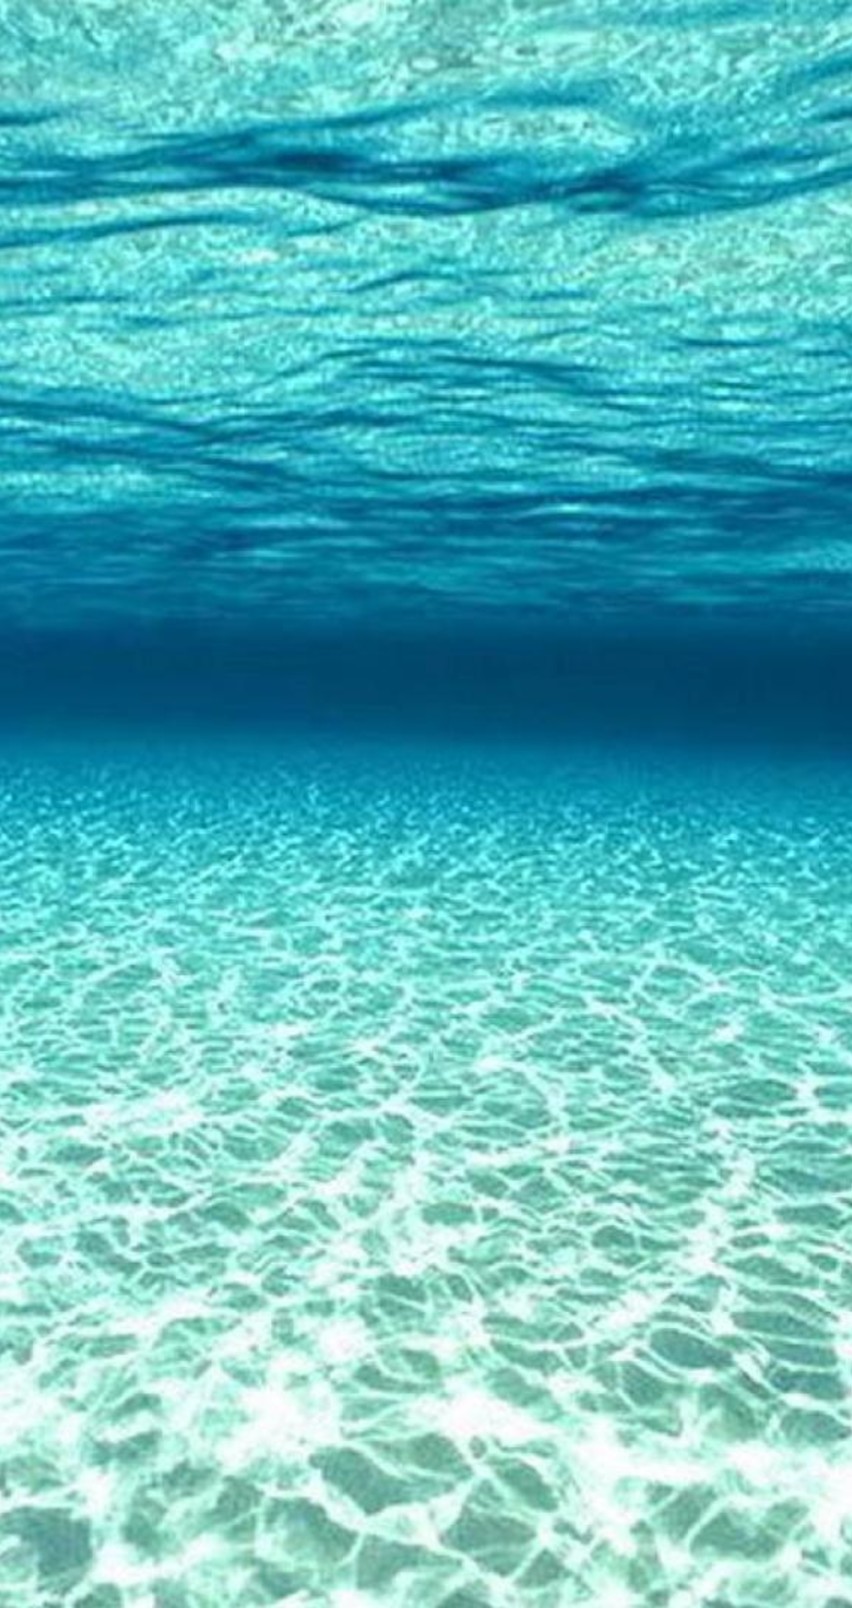 Beautiful, Summer Wallpaper For Iphone - Underwater Ocean Floor Ocean , HD Wallpaper & Backgrounds